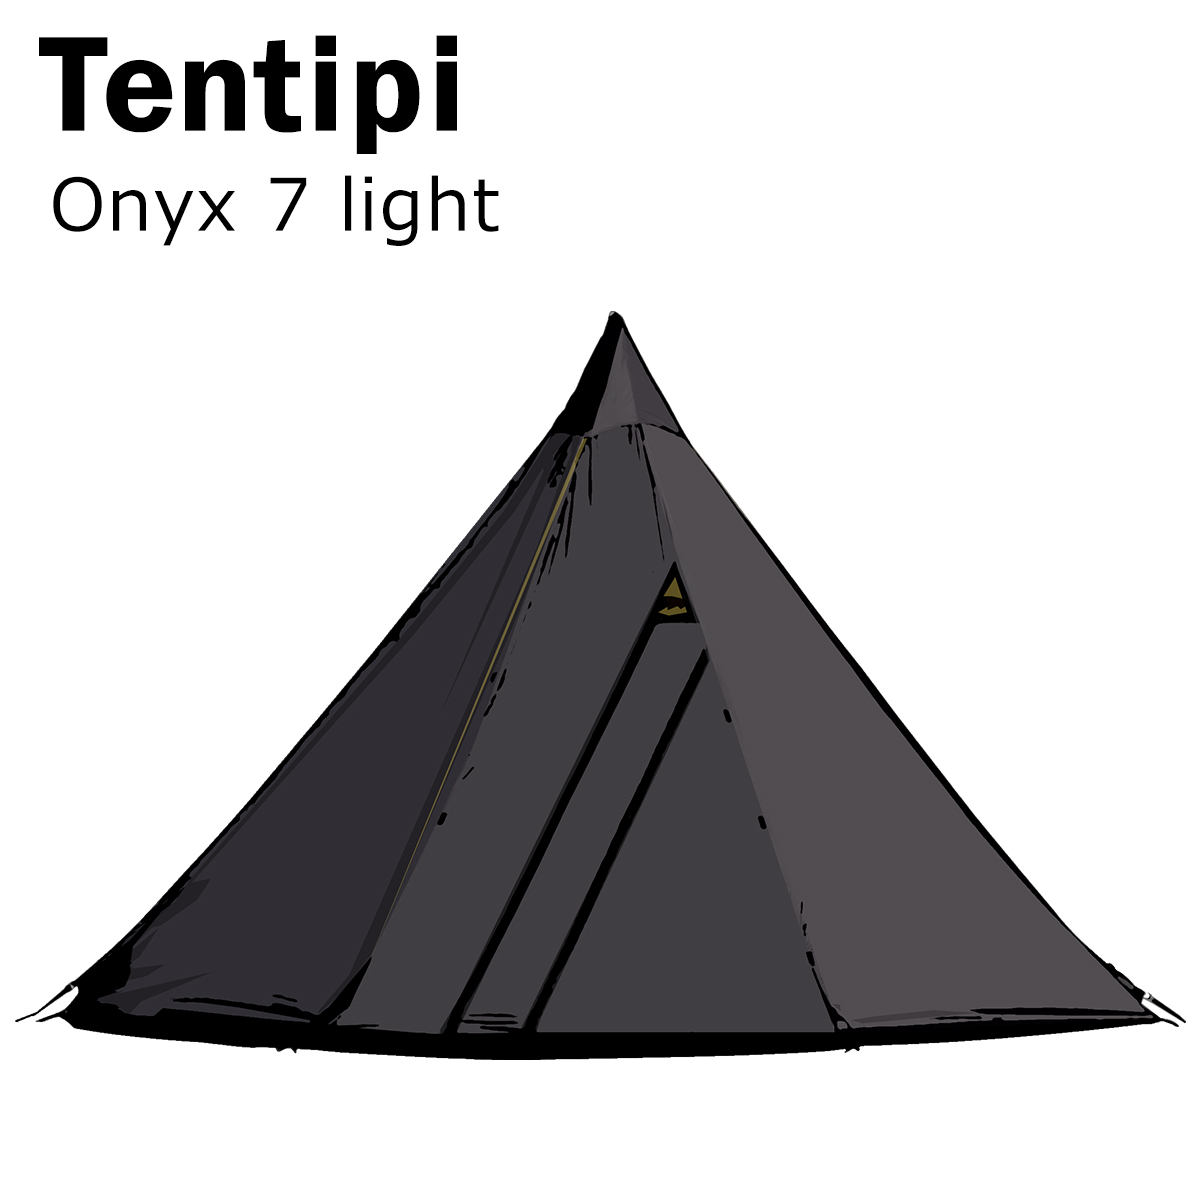 テンティピ オニキス 7 light 12370 テント ワンポール 軽量 ティピーテント 就寝人数6-8人用 Tentipi Onyx